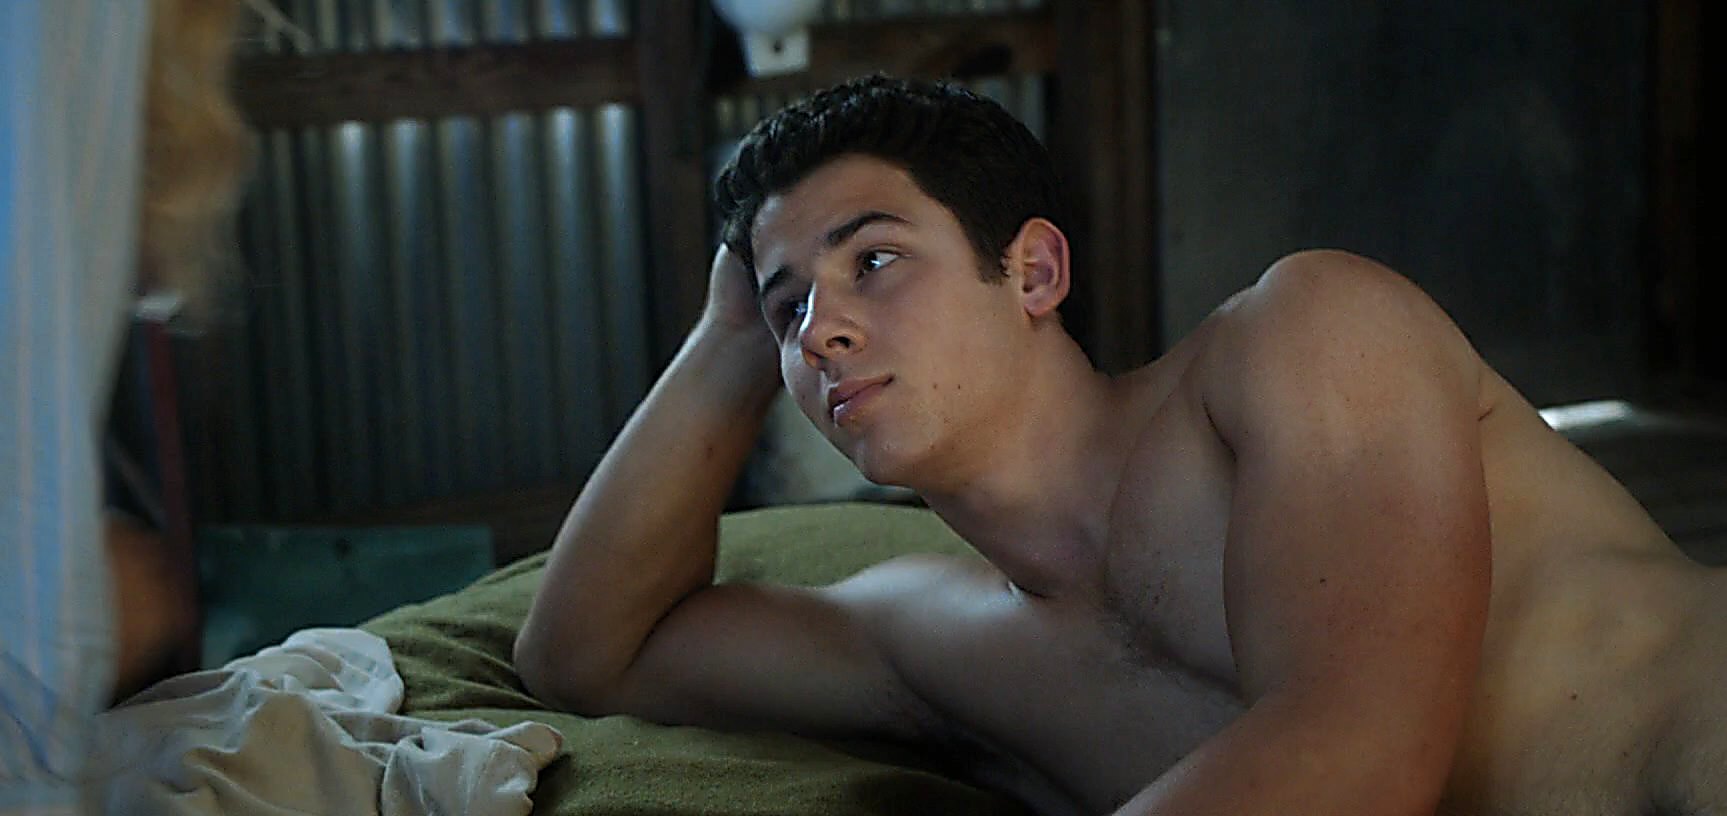 Nick Jonas sexy shirtless scene April 1, 2015, 3pm